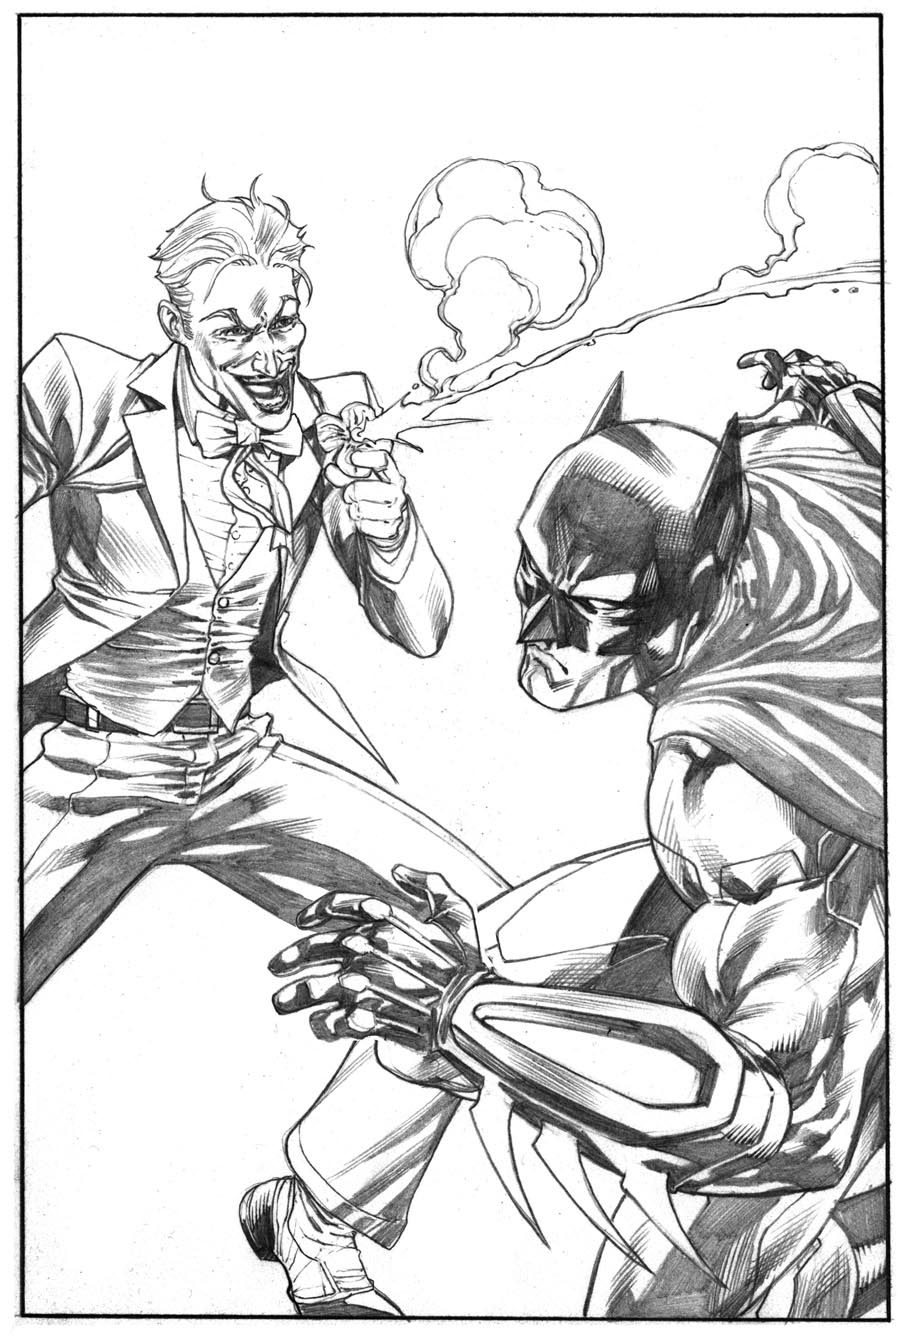 Robert Atkins Art: Daily Sketch : Batman vs. Joker....